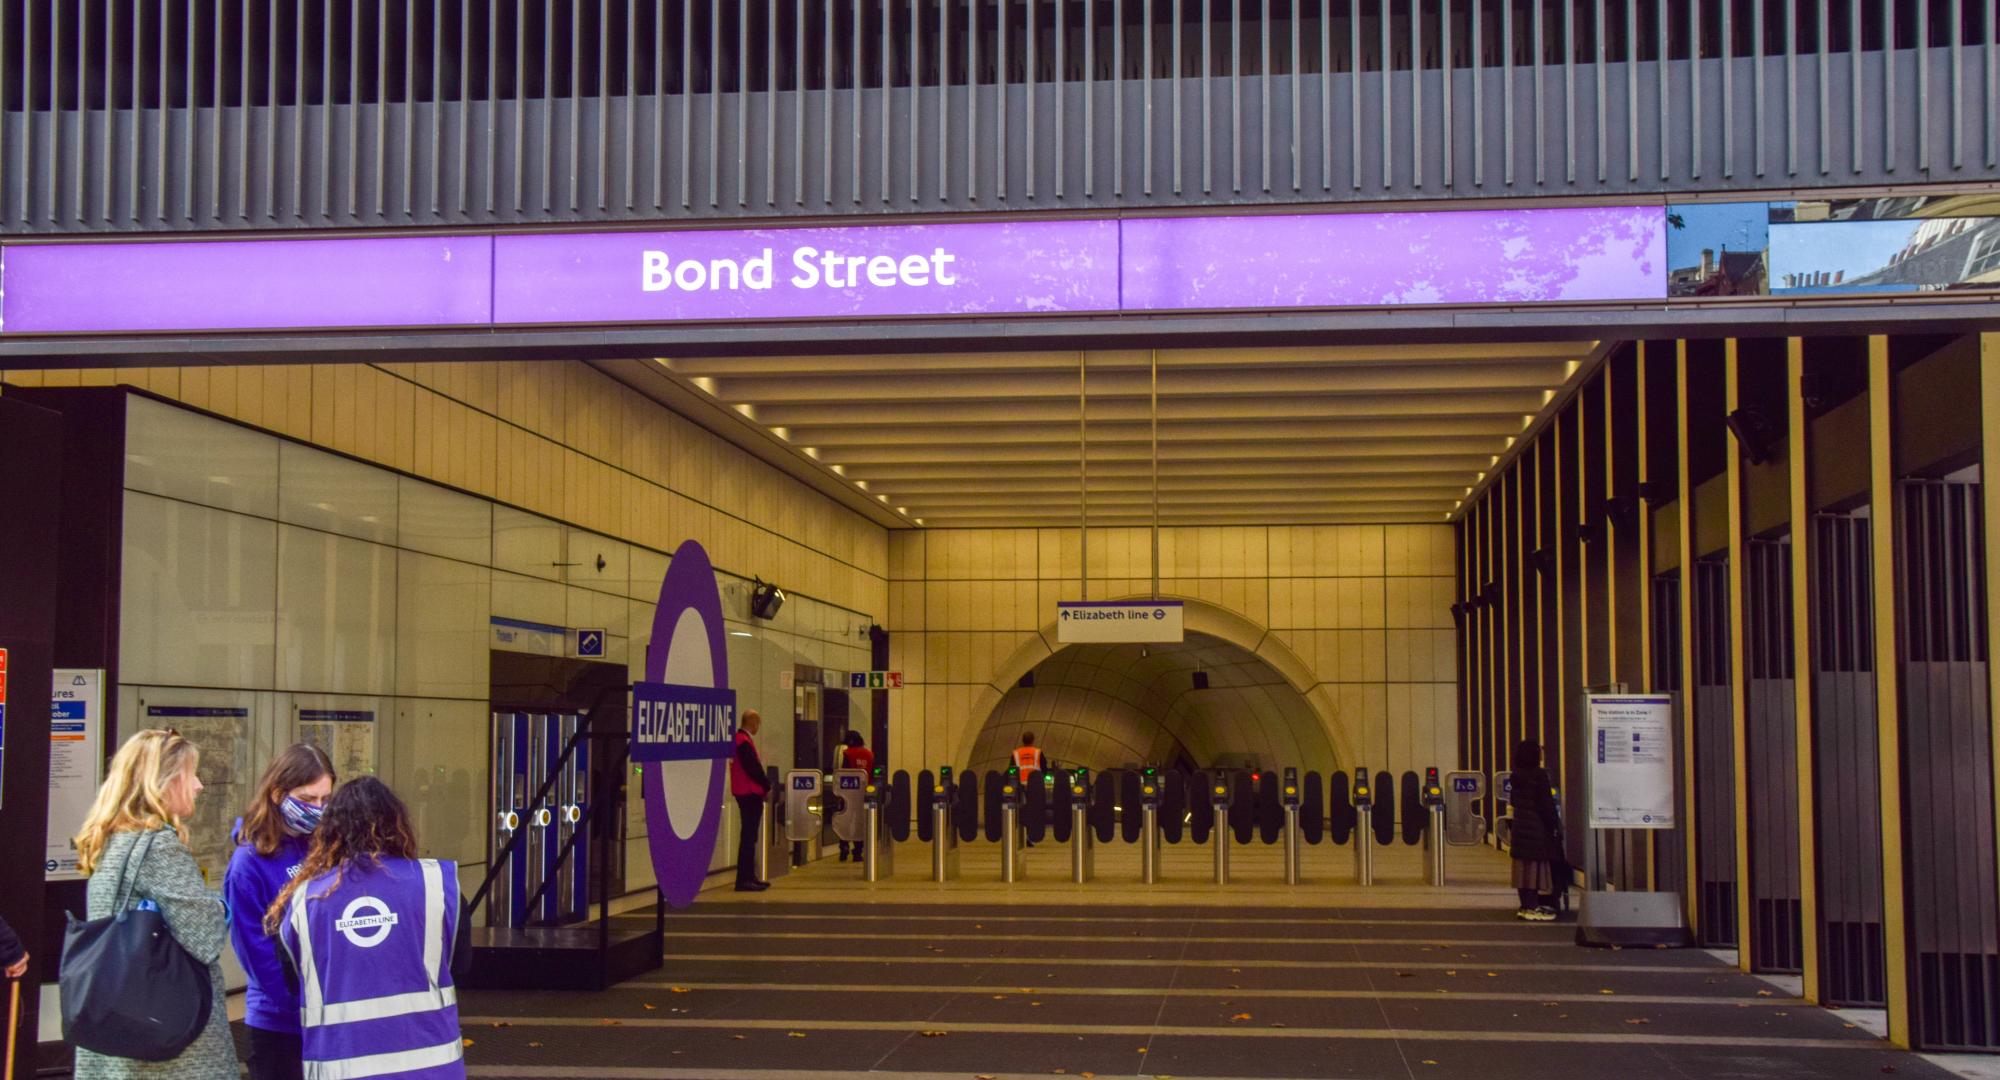 Bond Street Elizabeth Line Underground Station exterior view, on opening day